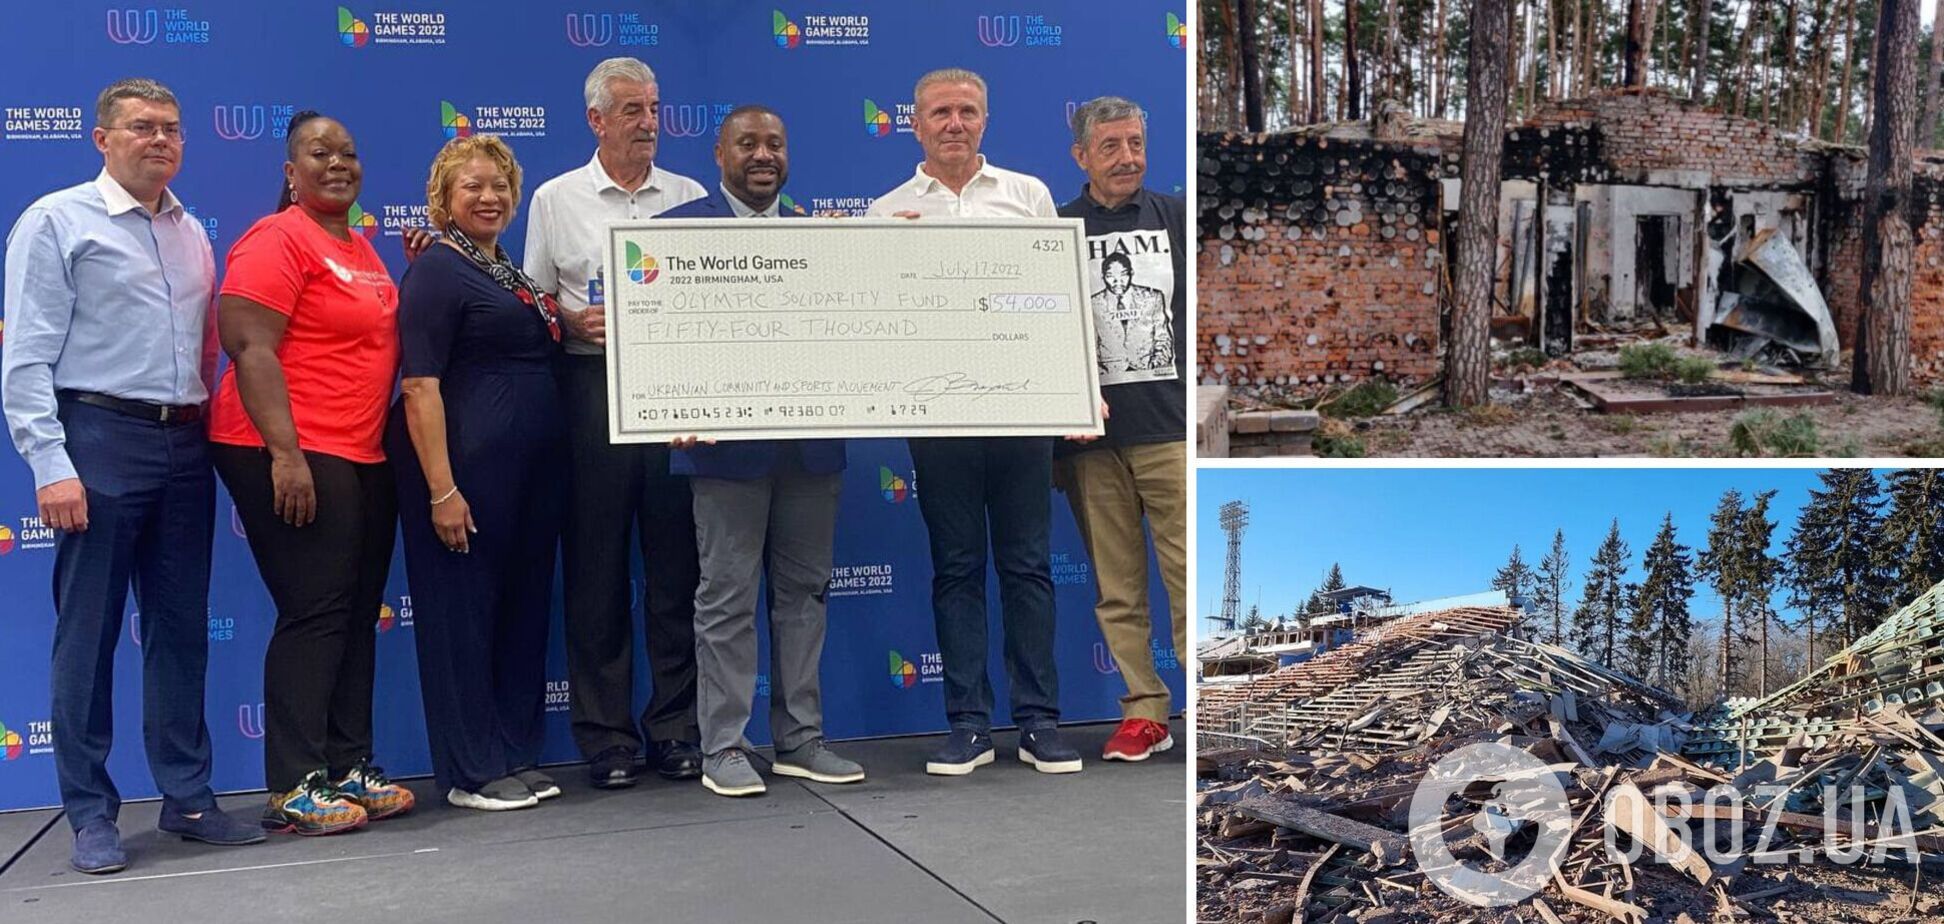 Дарили Украине по 1 доллару: 2 миллиона гривен собрали для ремонта разрушенных Россией арен на Всемирных играх в США